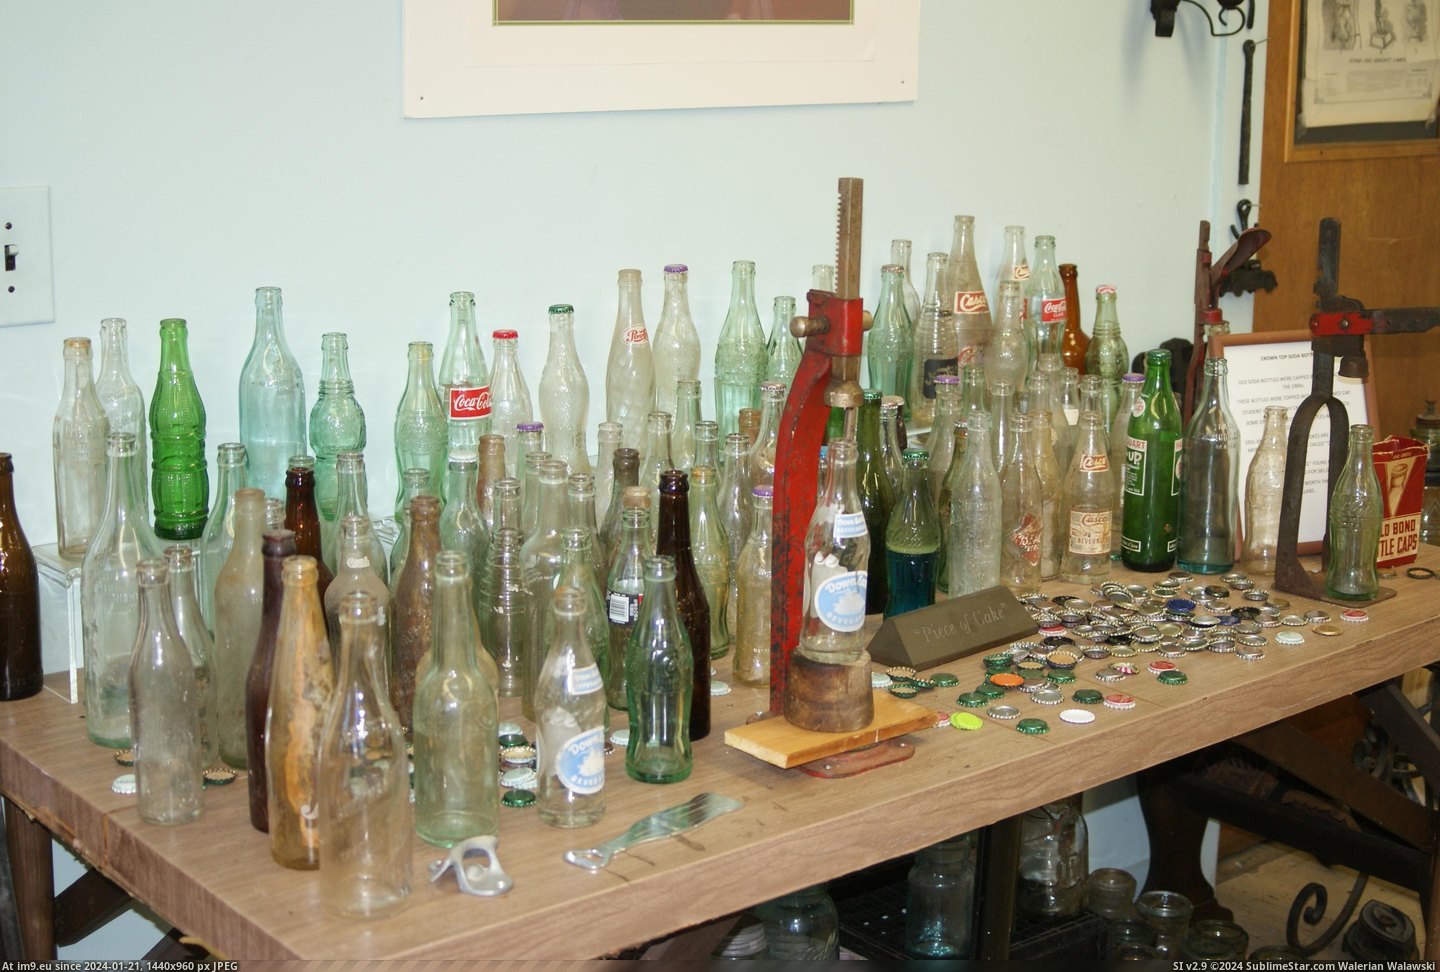 #Museum #Maine #Naples #Bottle MAINE BOTTLE MUSEUM NAPLES (22) Pic. (Bild von album MAINE BOTTLE MUSEUM))